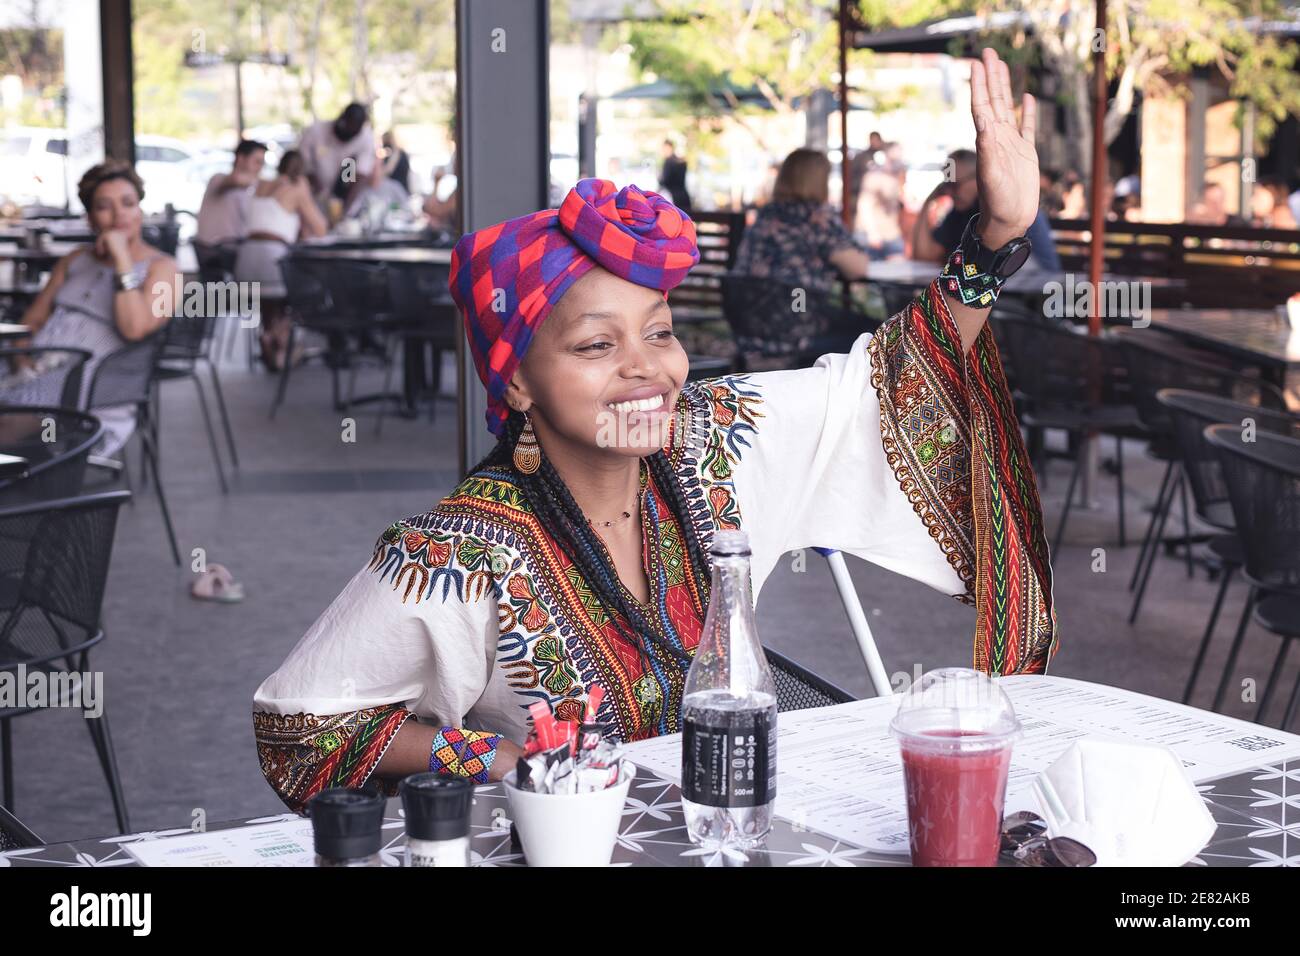 Donna africana alla moda che indossa un doek o una sciarpa della testa che ondola ad un amico Foto Stock